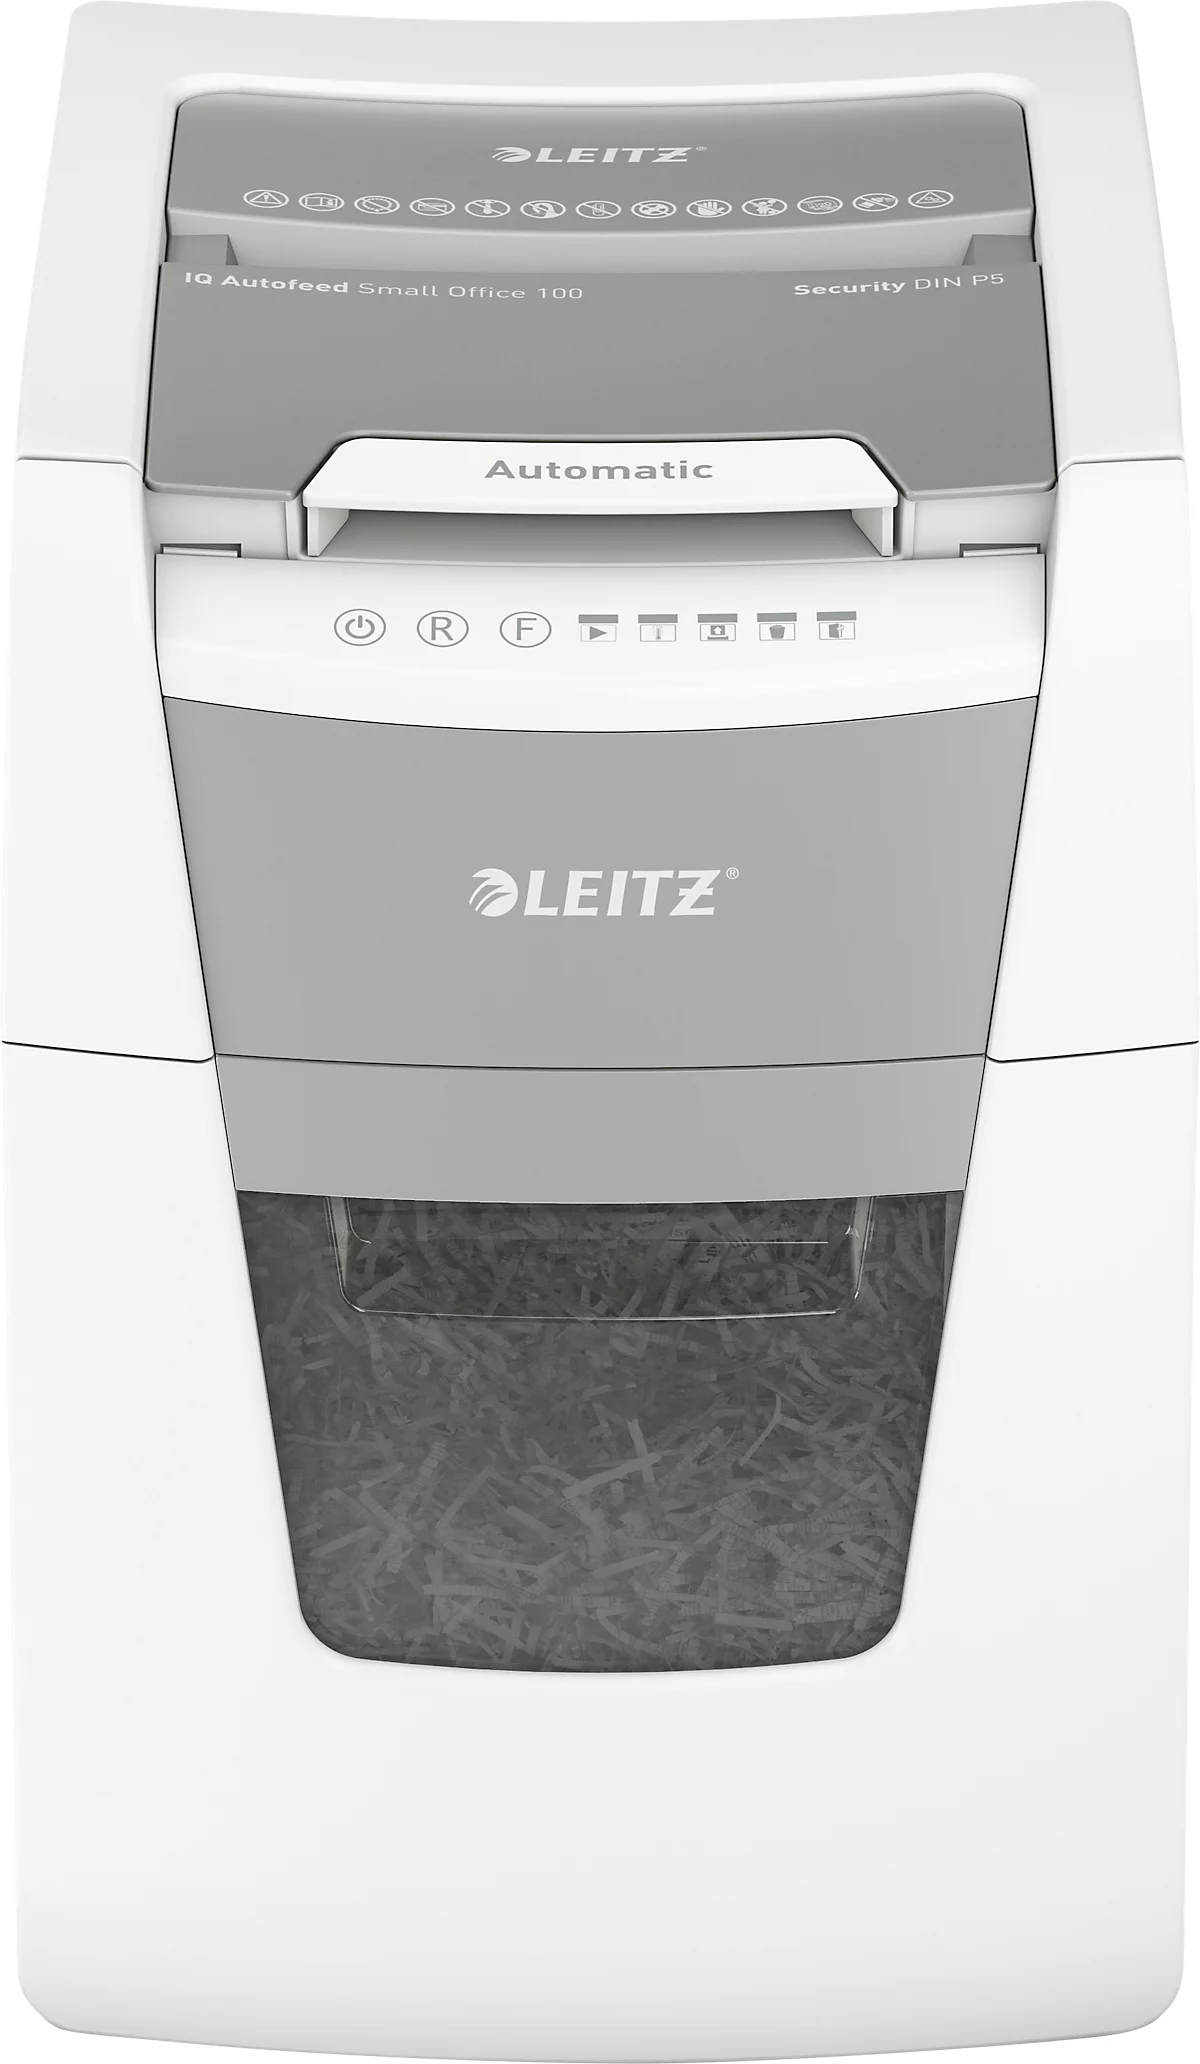 LEITZ Aktenvernichter IQ Autofeed Small Office 100, vollautomatisch, 2 x 15 mm Mikropartikelschnitt, P-5, 34 l, 6-100 Blatt Schneidkapazität, weiß